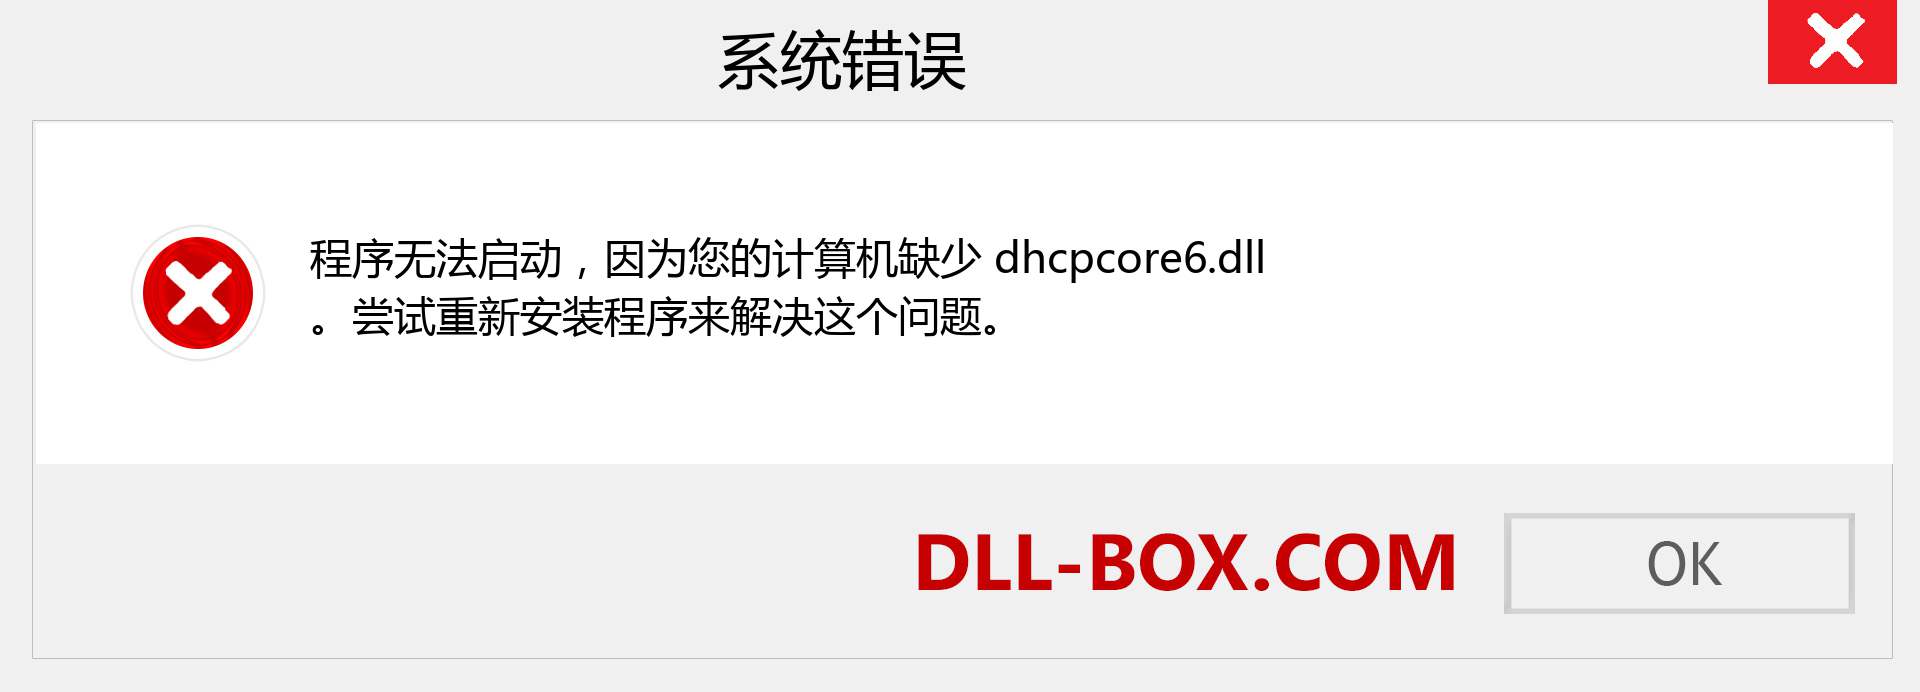 dhcpcore6.dll 文件丢失？。 适用于 Windows 7、8、10 的下载 - 修复 Windows、照片、图像上的 dhcpcore6 dll 丢失错误